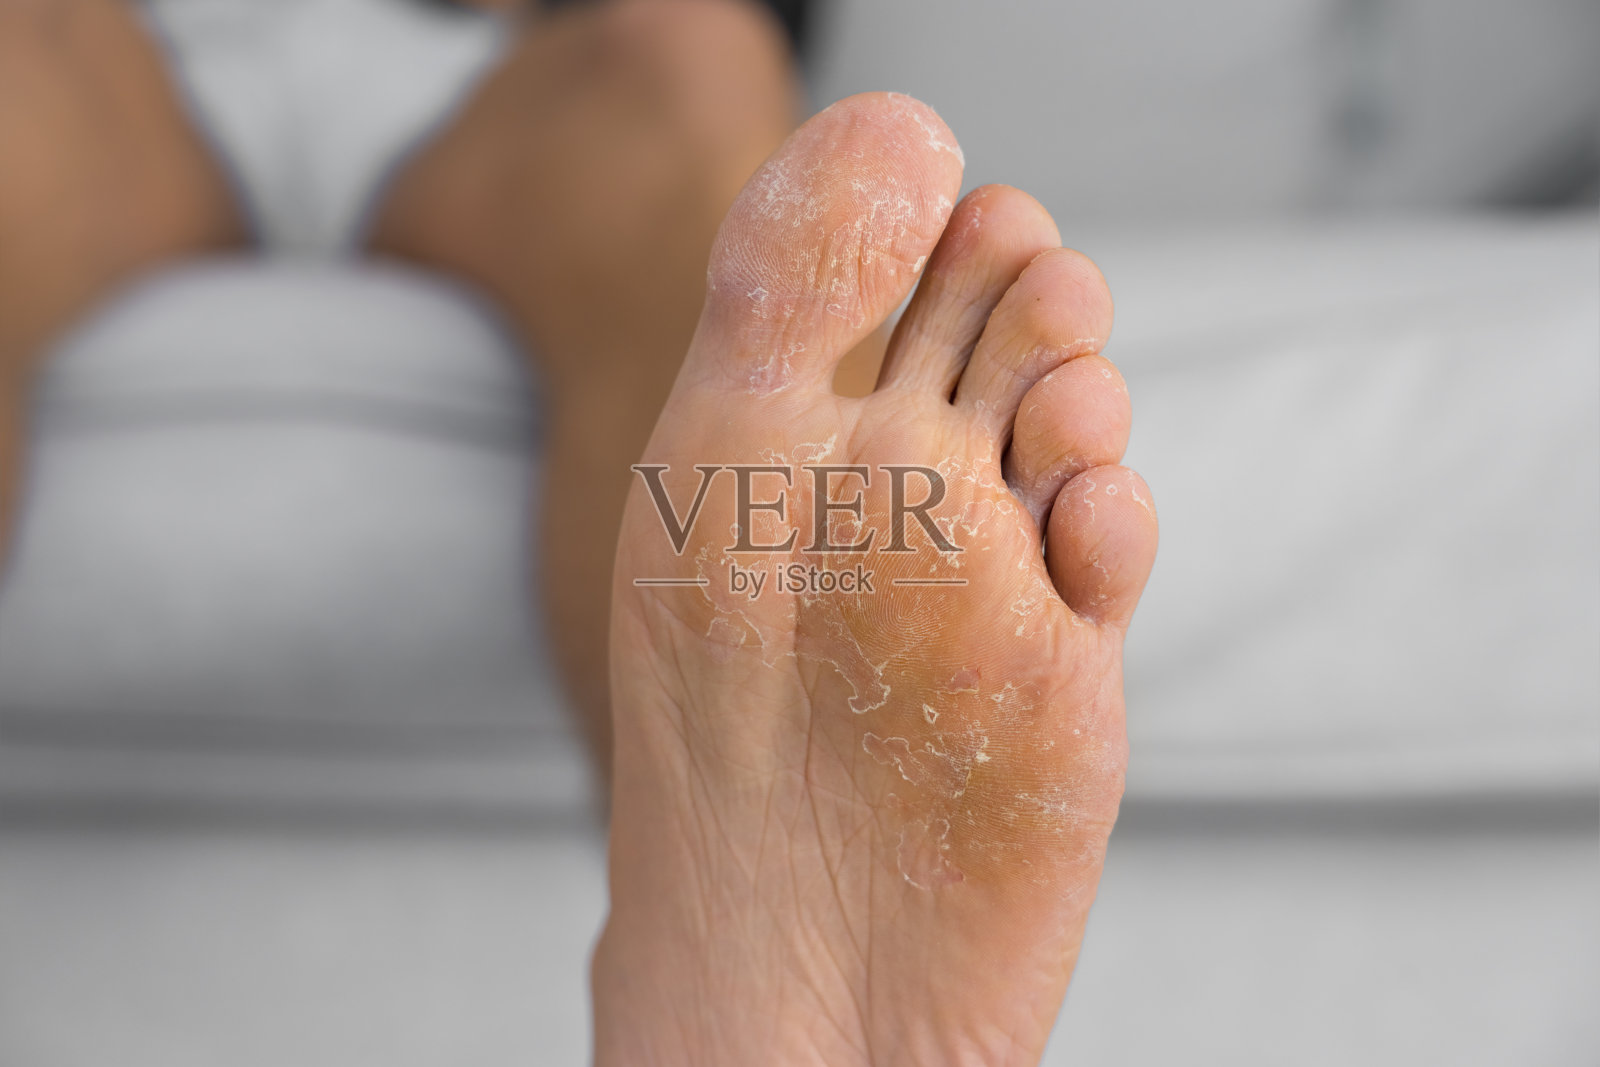 近距离观察脱皮和龟裂的脚。真菌感染或足癣、皮肤干燥、皮炎、湿疹、牛皮癣、过敏反应、脚出汗或脱水照片摄影图片